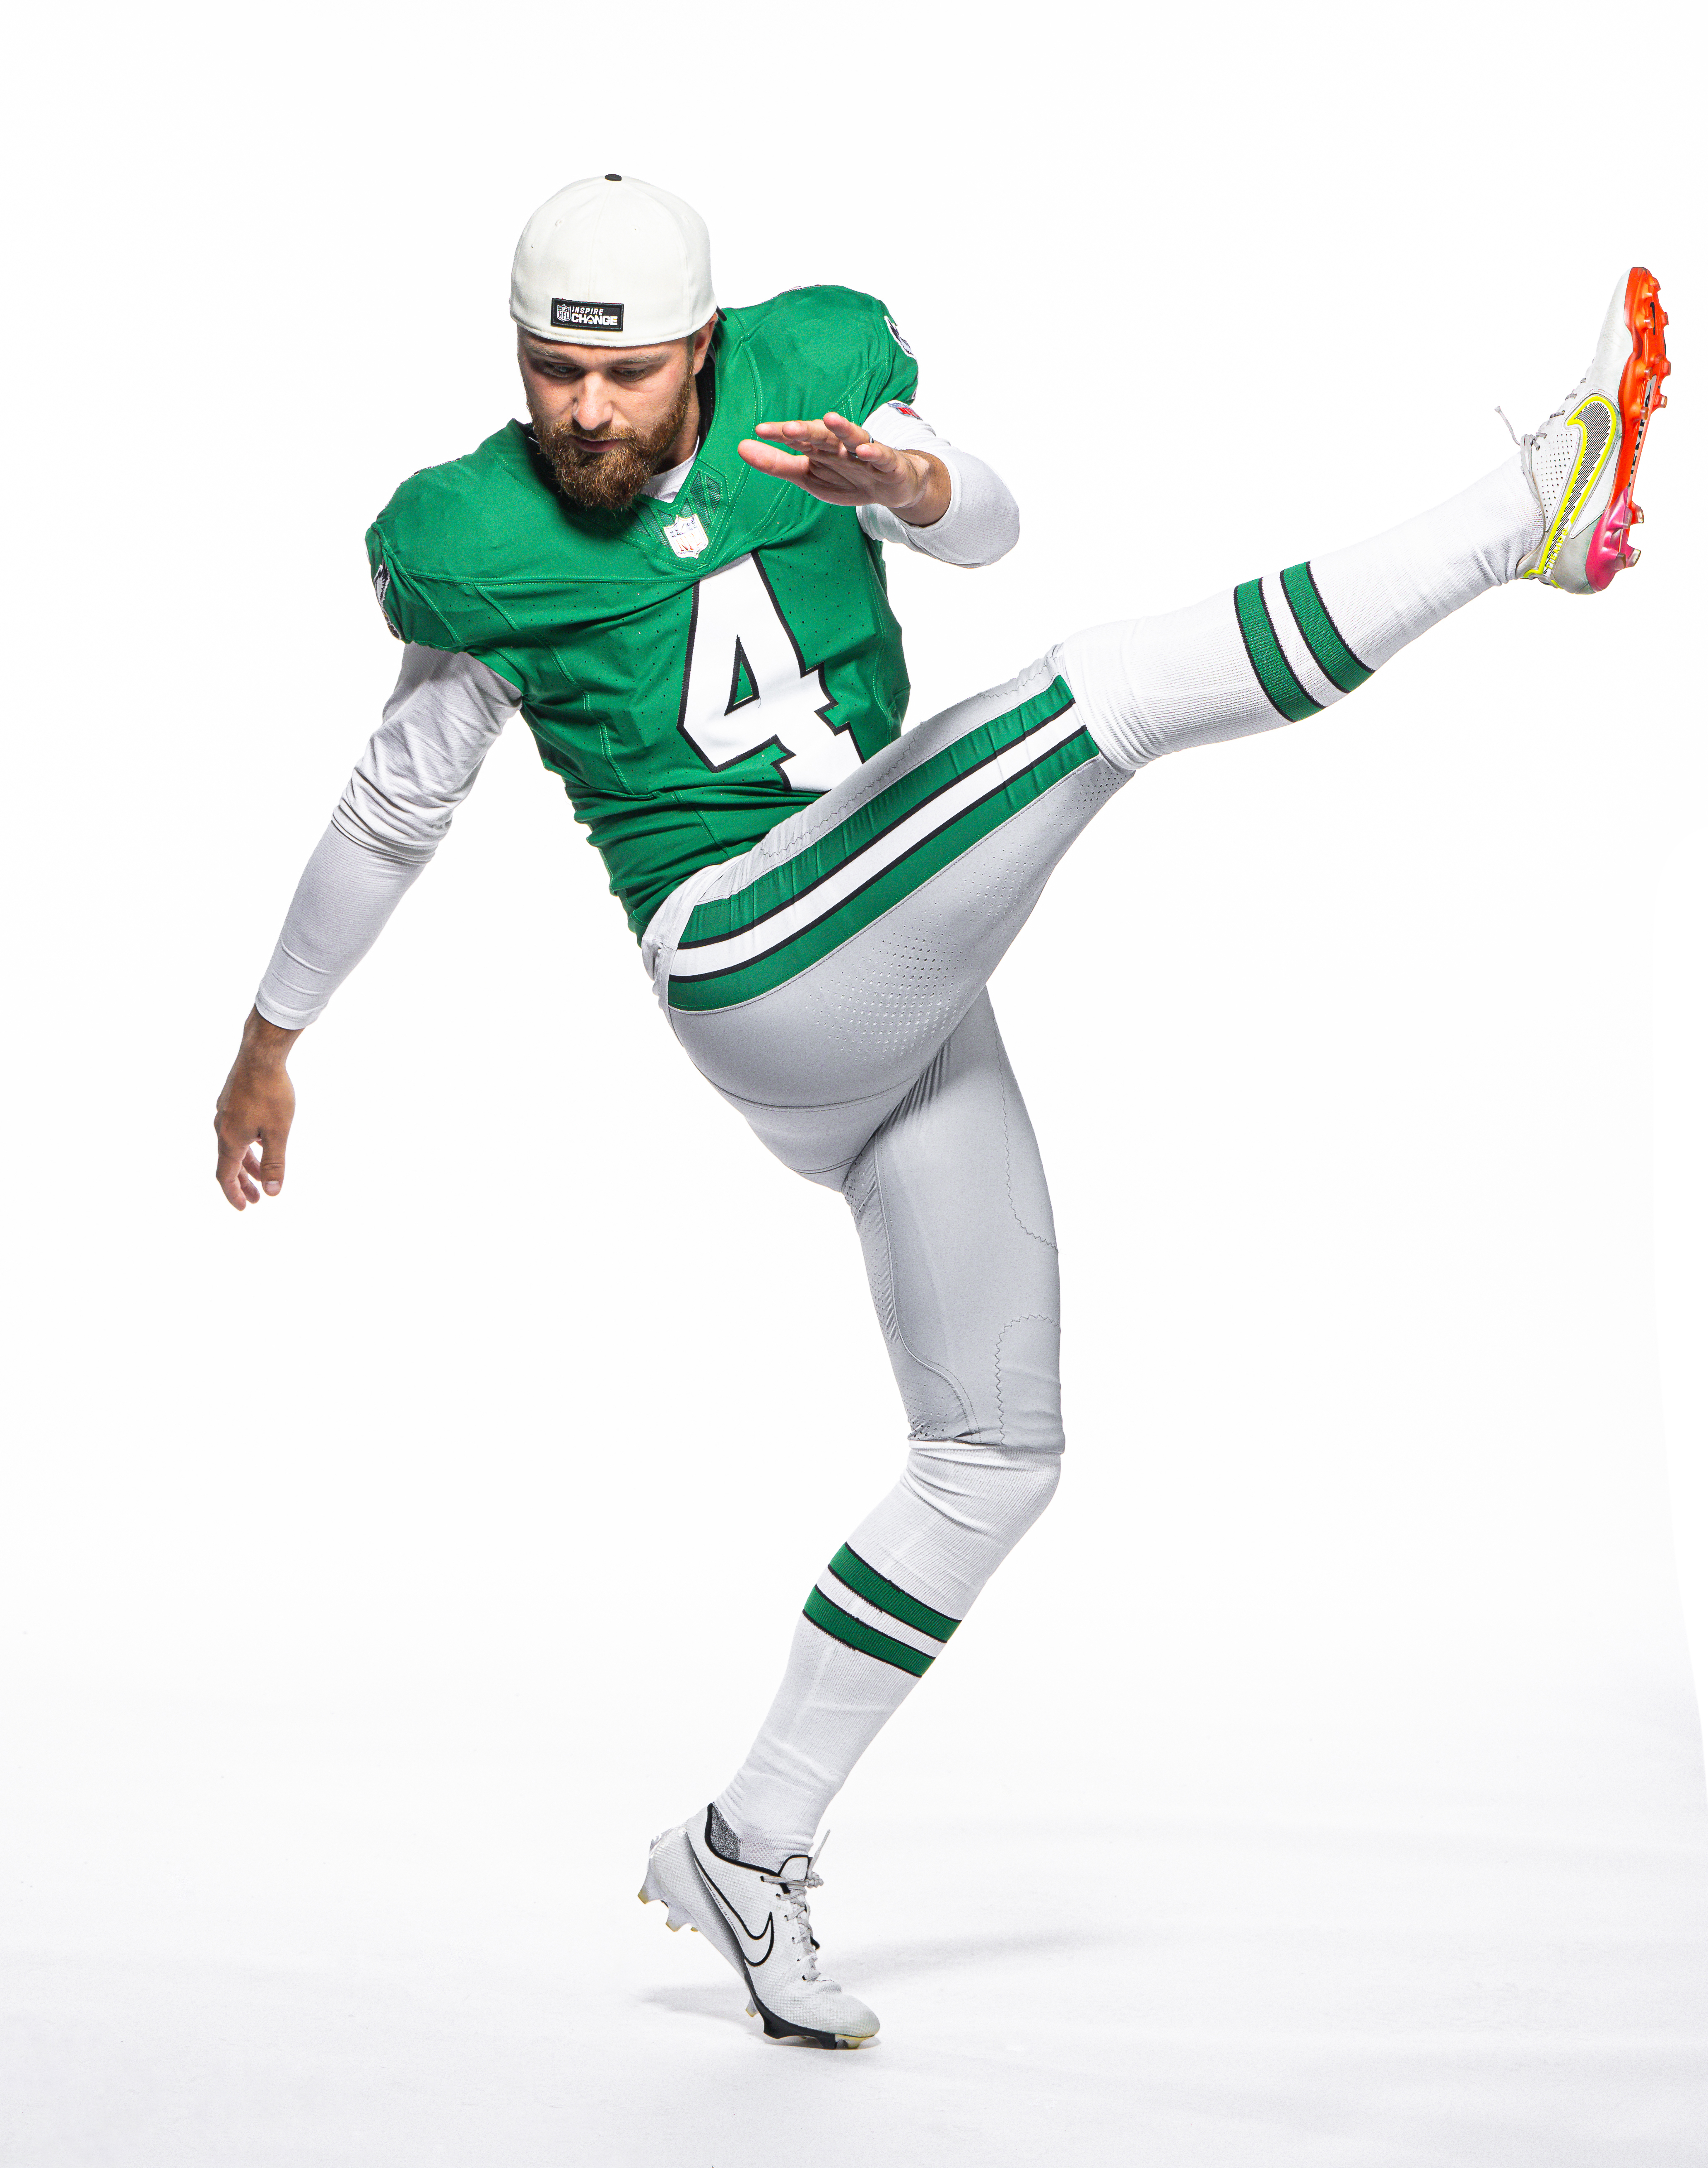 Eagles rocking the Kelly green uniforms next season 👀🔥 📸: @mcmanusdesign